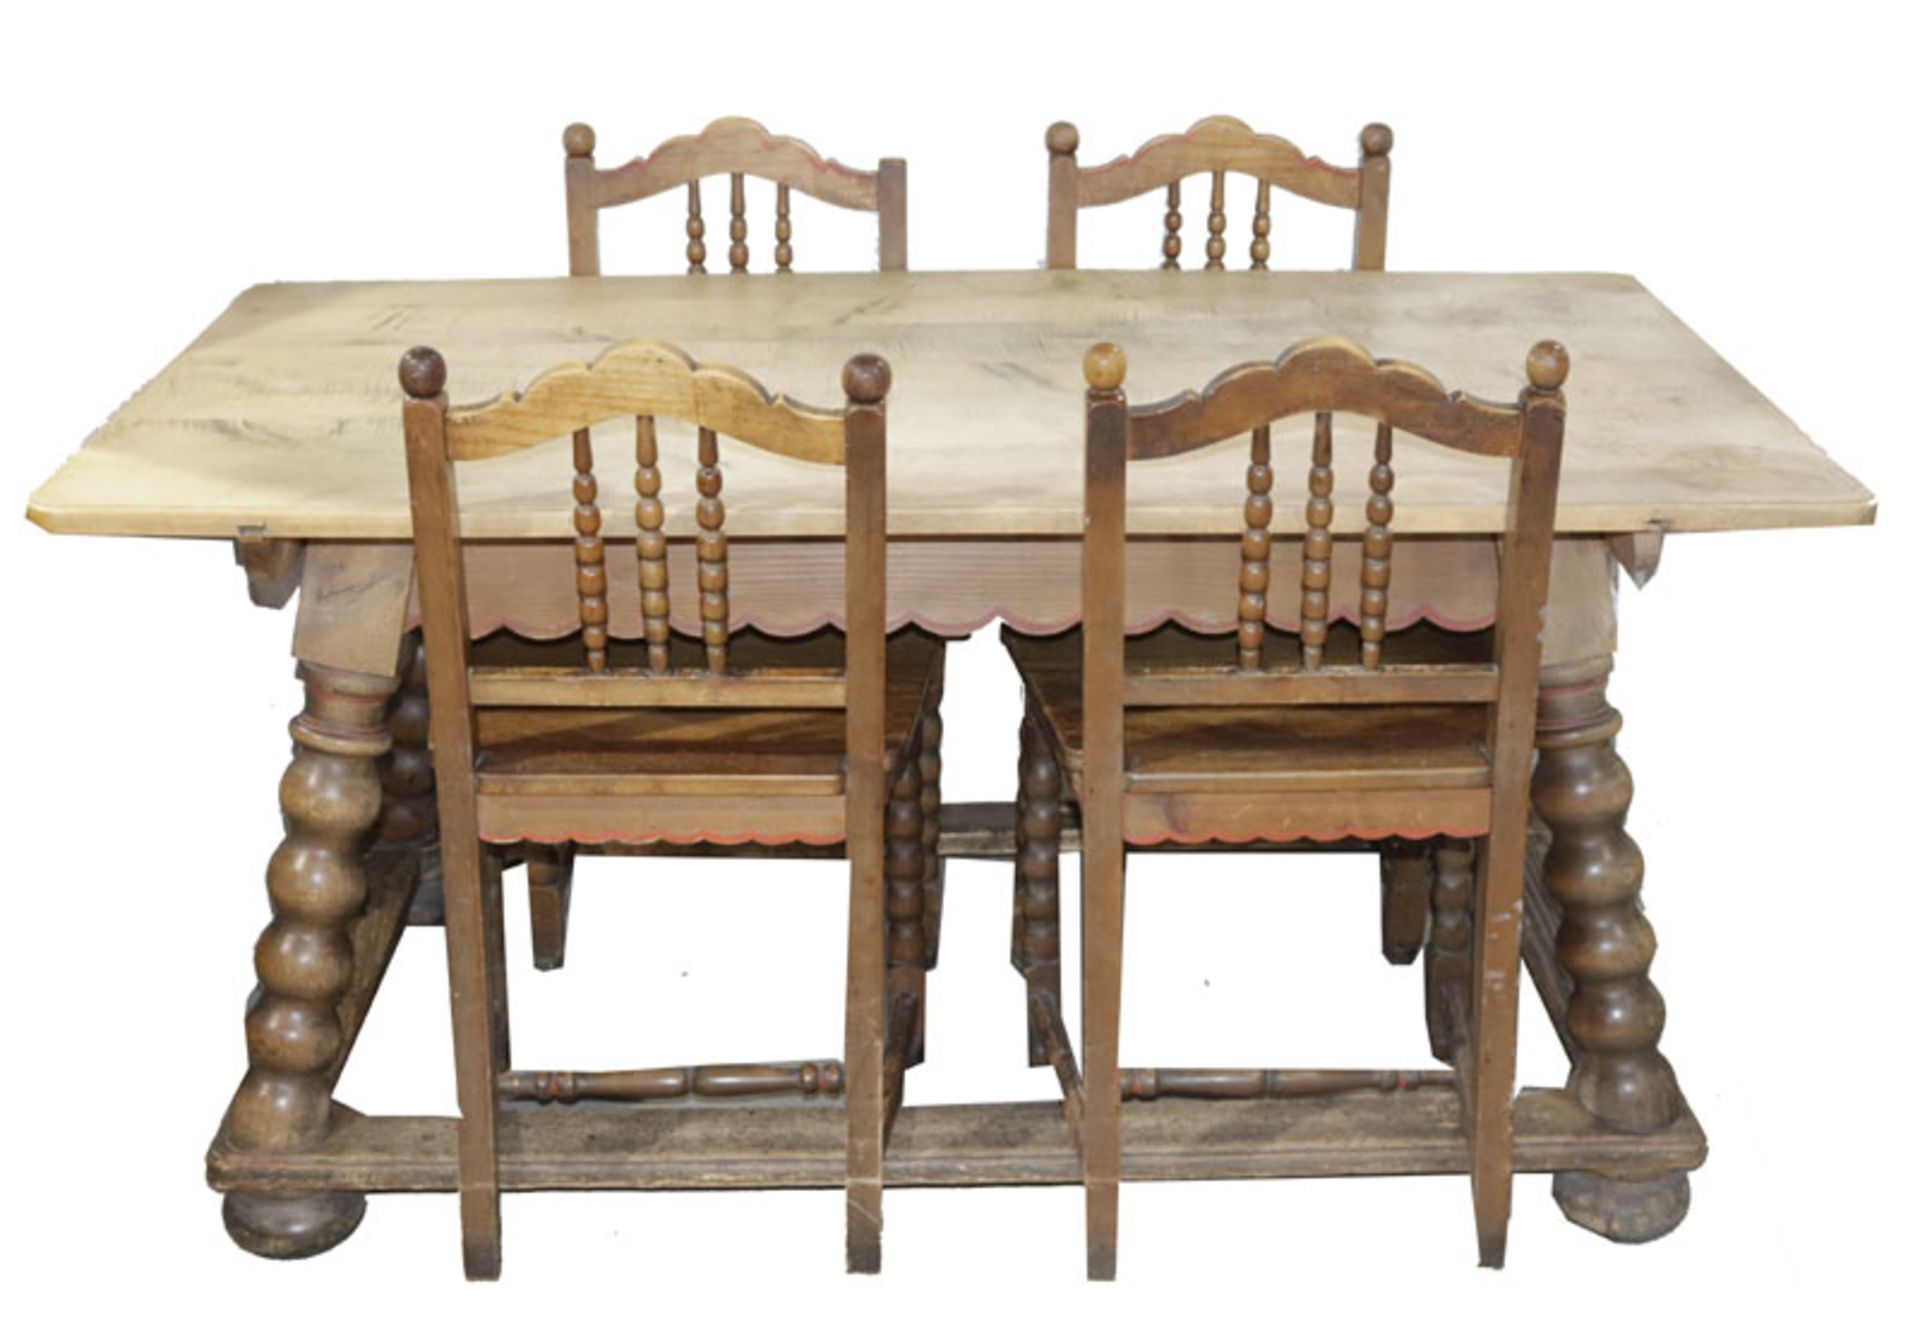 4 Holzstühle, teils gedrechselt, teils rot bemalt, H 87 cm, B 50 cm, T 44 cm, und Tisch, auf